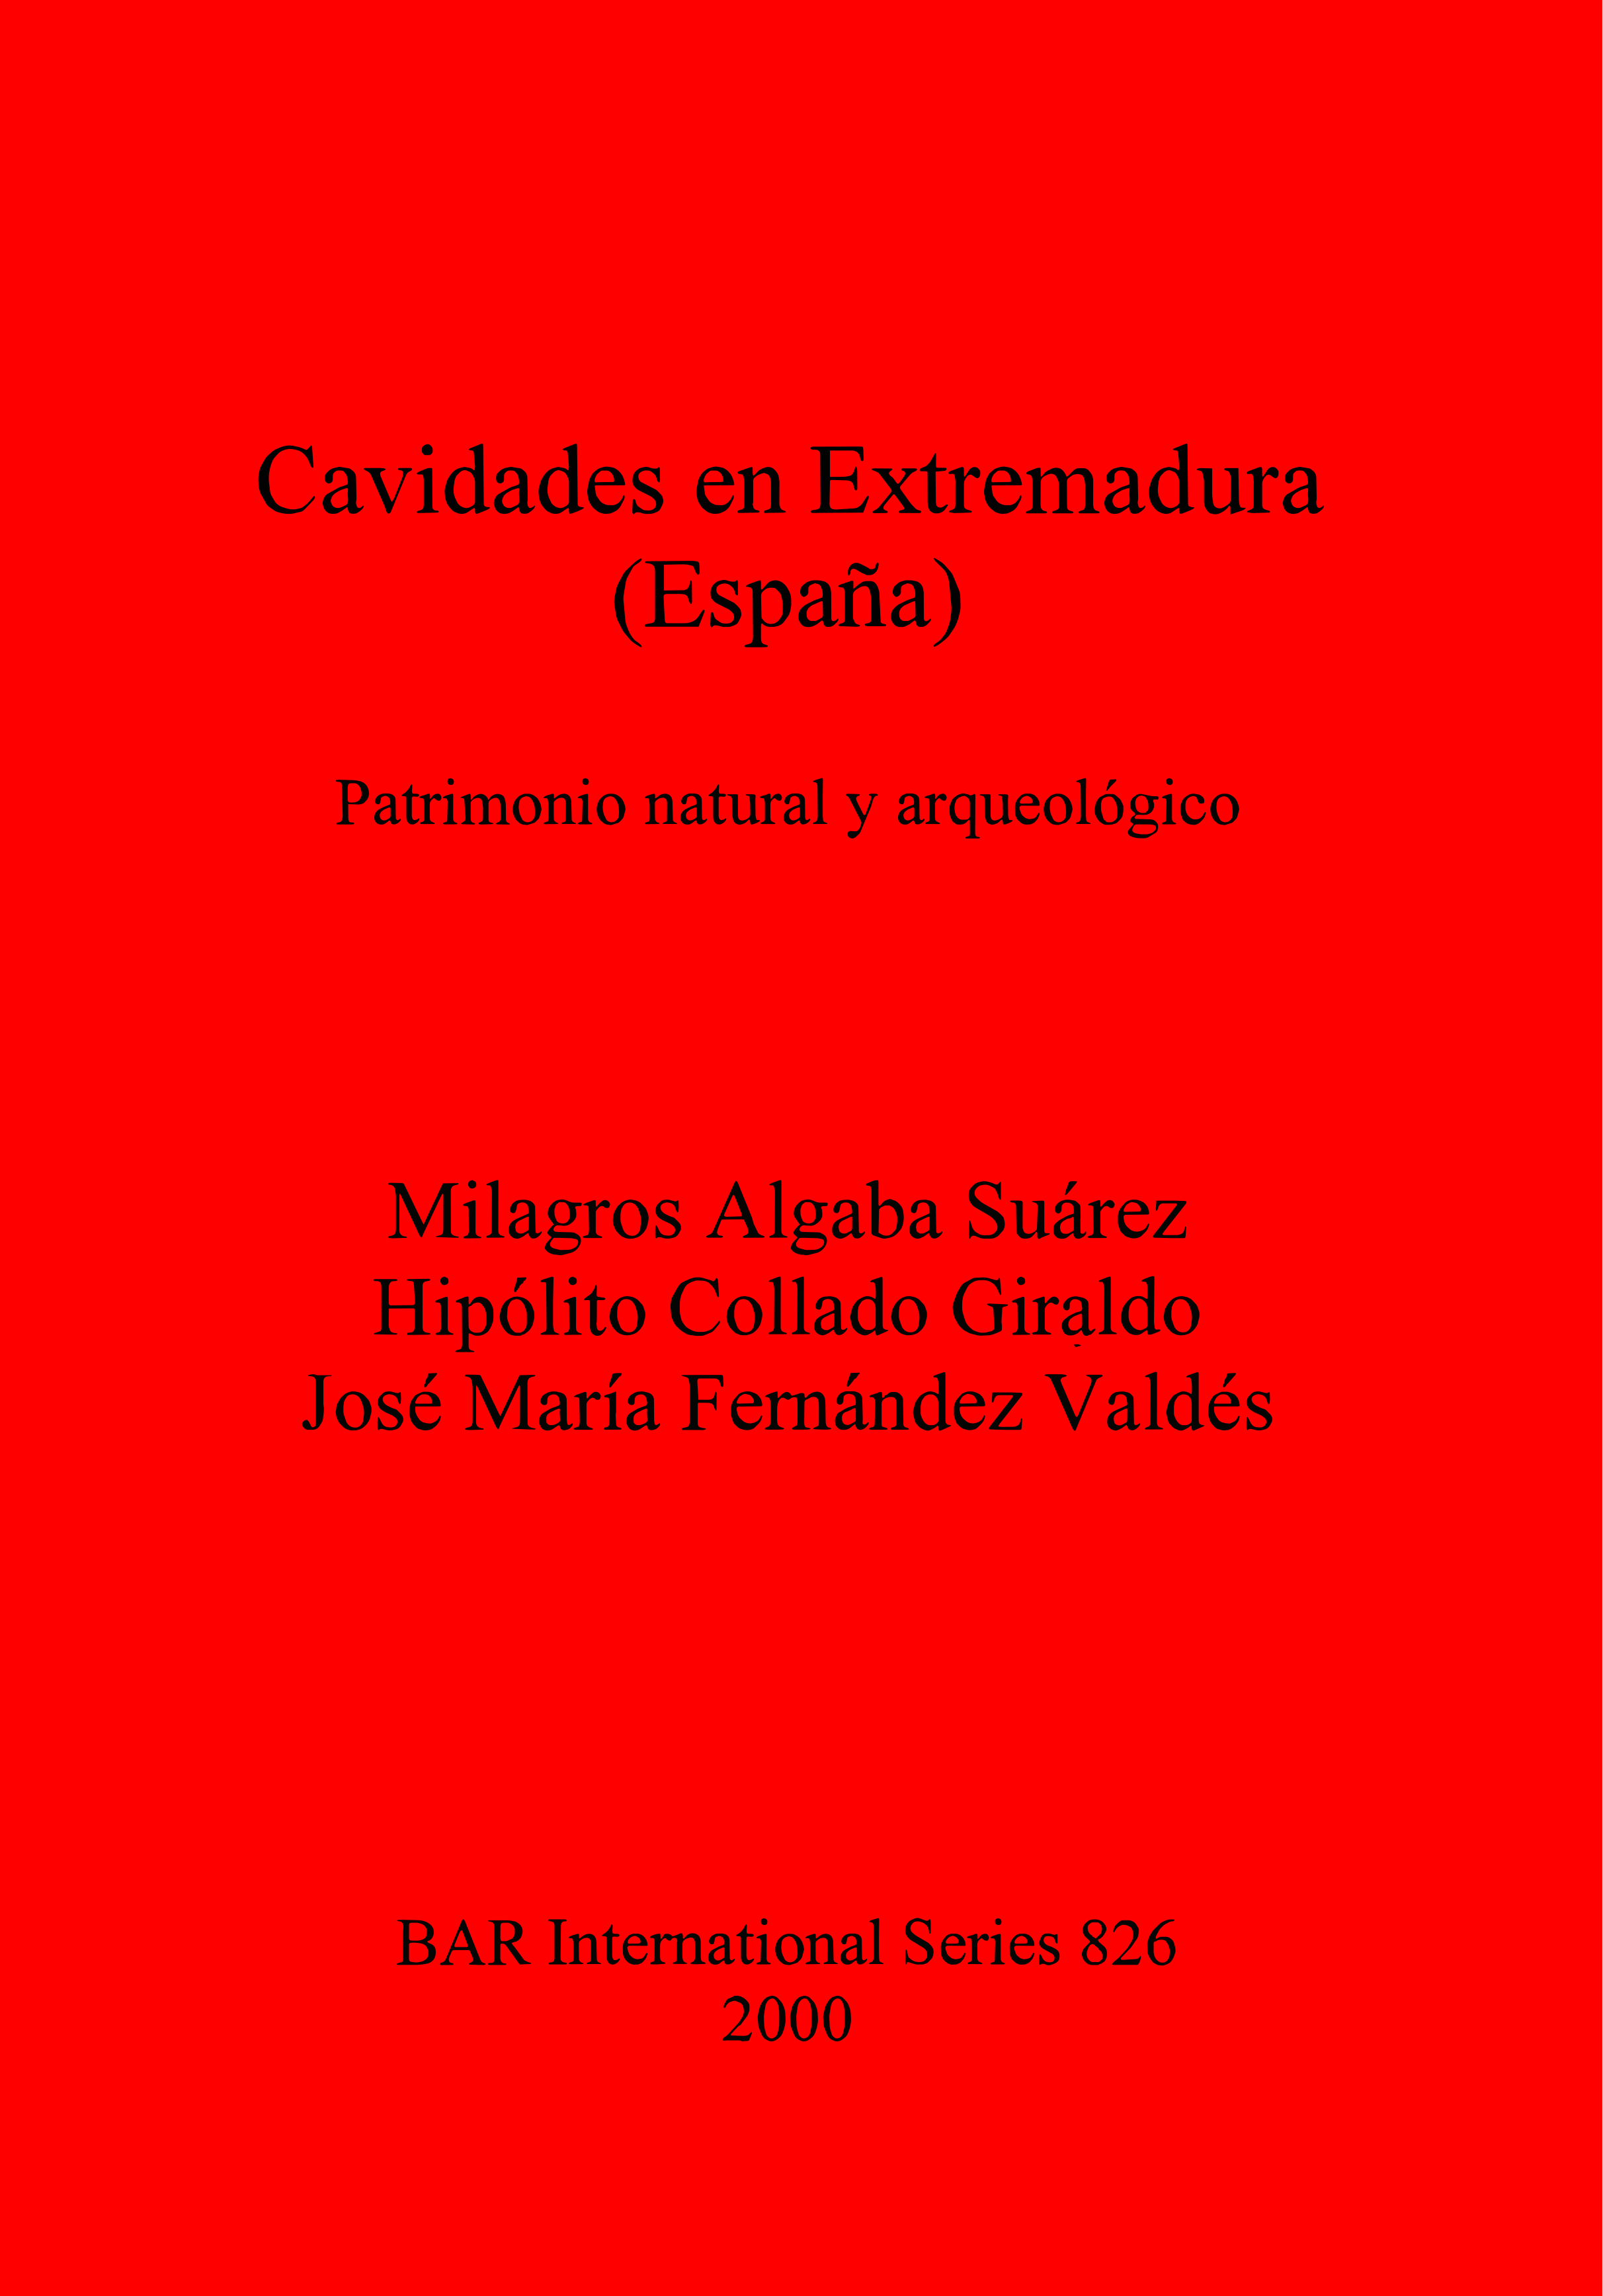 Cavidades en Extremadura (España): Patrimonio natural y arqueológico